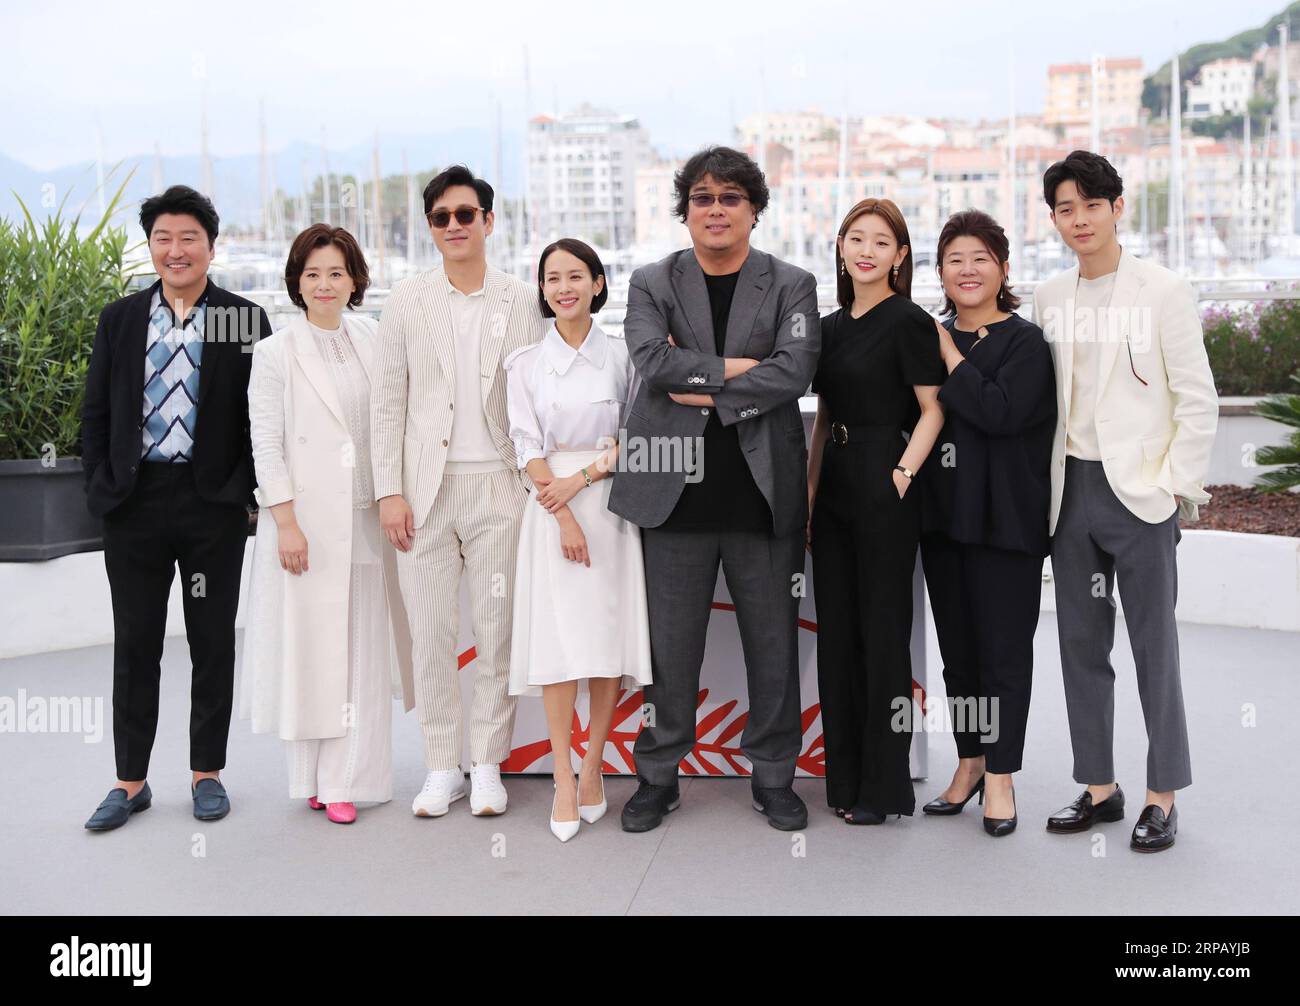 190522 -- CANNES, 22 maggio 2019 Xinhua -- i membri del cast del parassita posano durante una photocall al 72° Festival di Cannes, in Francia, 22 maggio 2019. Parasite competerà per la Palme d o con altri 20 film. Xinhua/Gao Jing FRANCIA-CANNES-FILM FESTIVAL-PHOTOCALL- PARASSITA PUBLICATIONxNOTxINxCHN Foto Stock